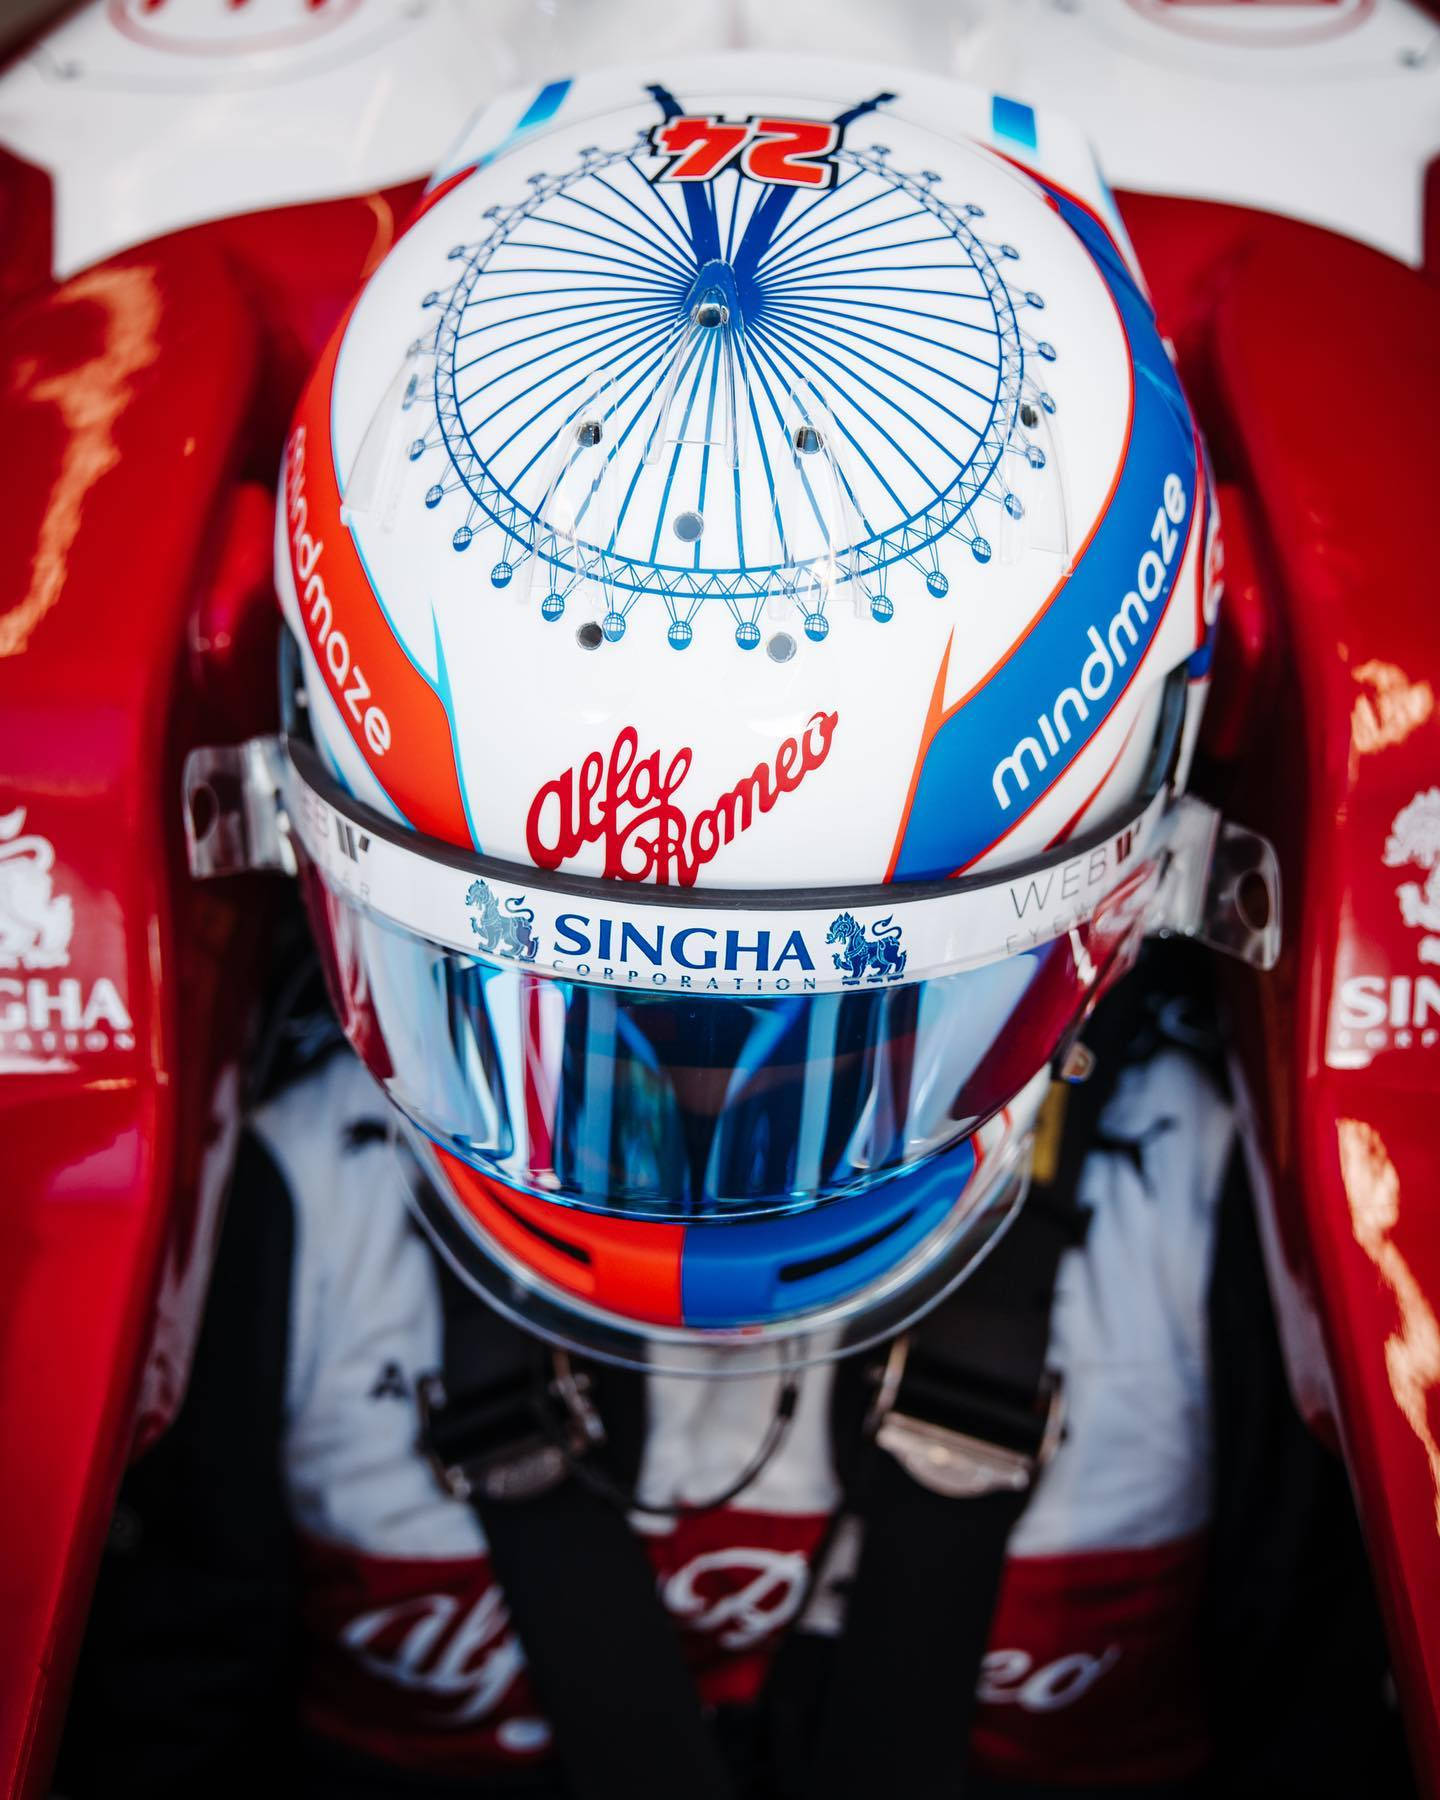 Top View Of Formula 2 Racer Guanyu Zhou's Helmet